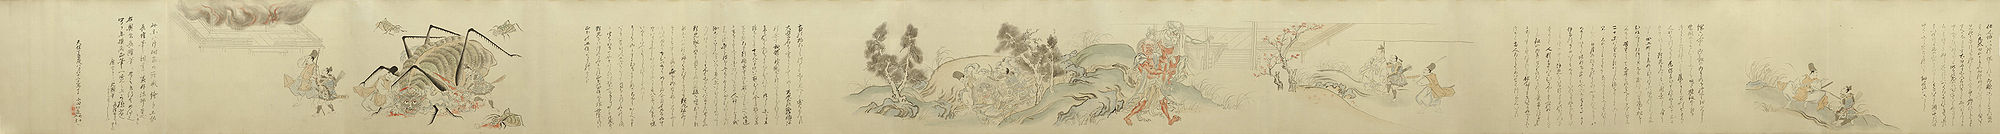 Bilder 8 bis 13 (von rechts nach links) des Tsuchigumo no Sōshi